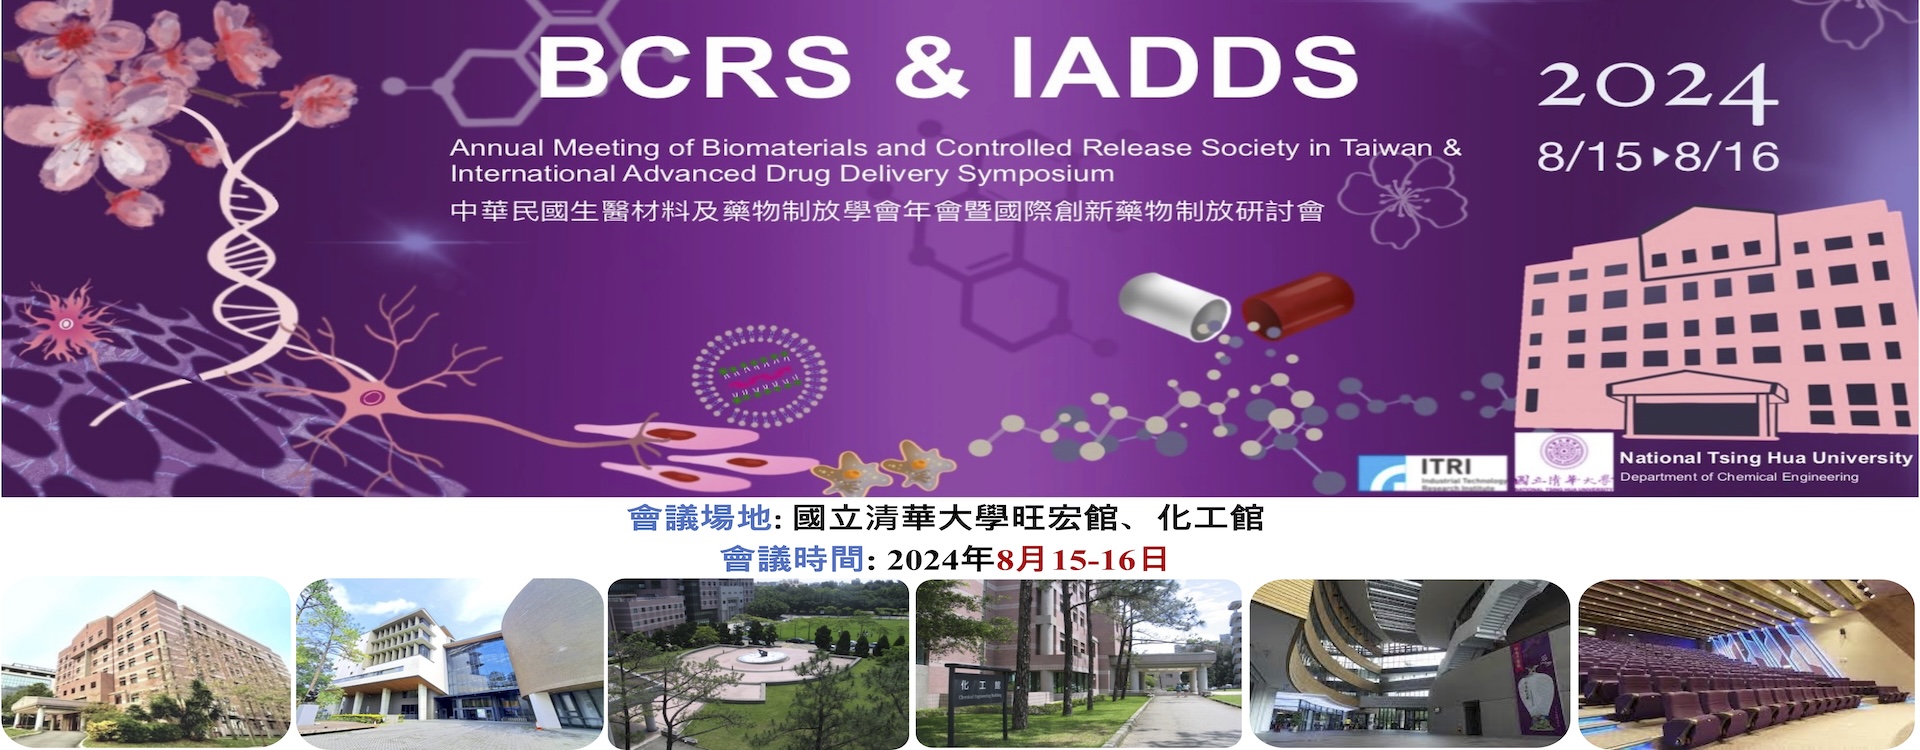 2024中華民國生醫材料及藥物制放學會年會暨國際創新藥物制放研討會